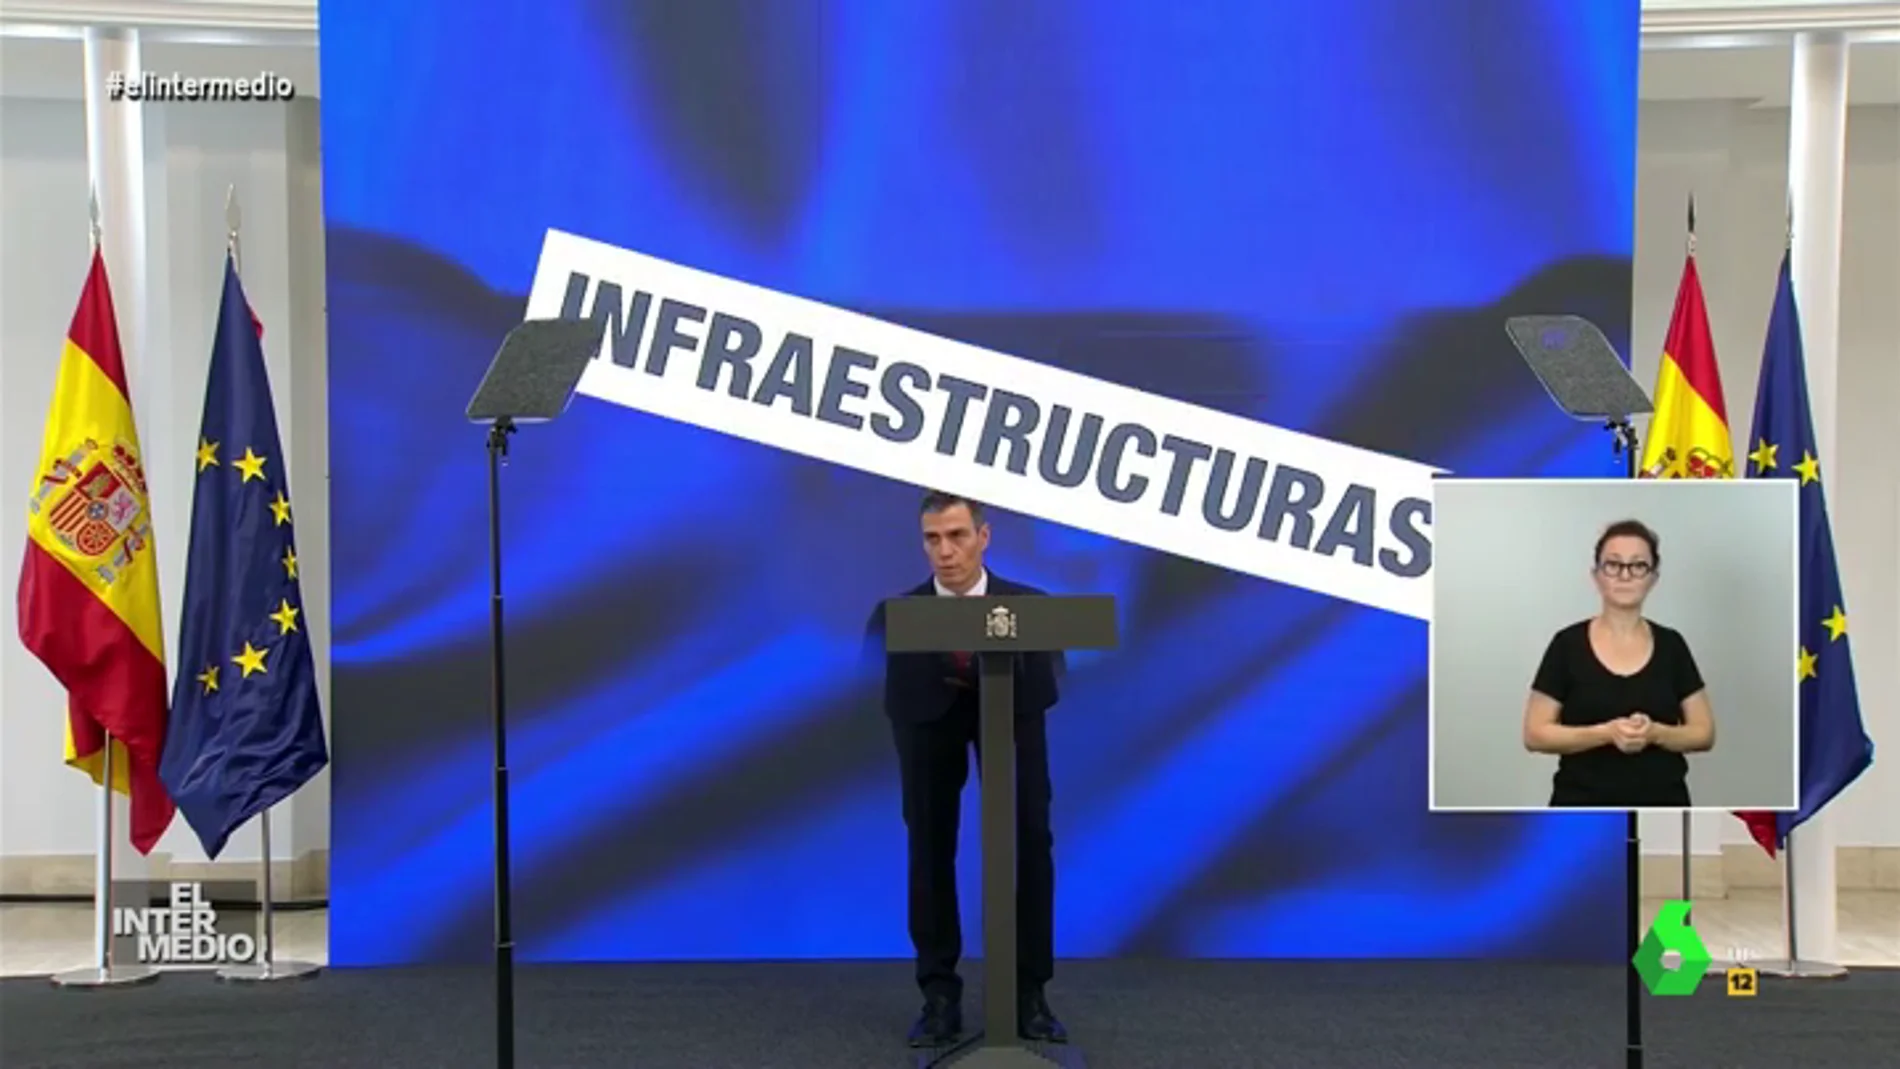 Vídeo manipulado - El susto de Pedro Sánchez cuando se le cae encima un cartel durante un discurso